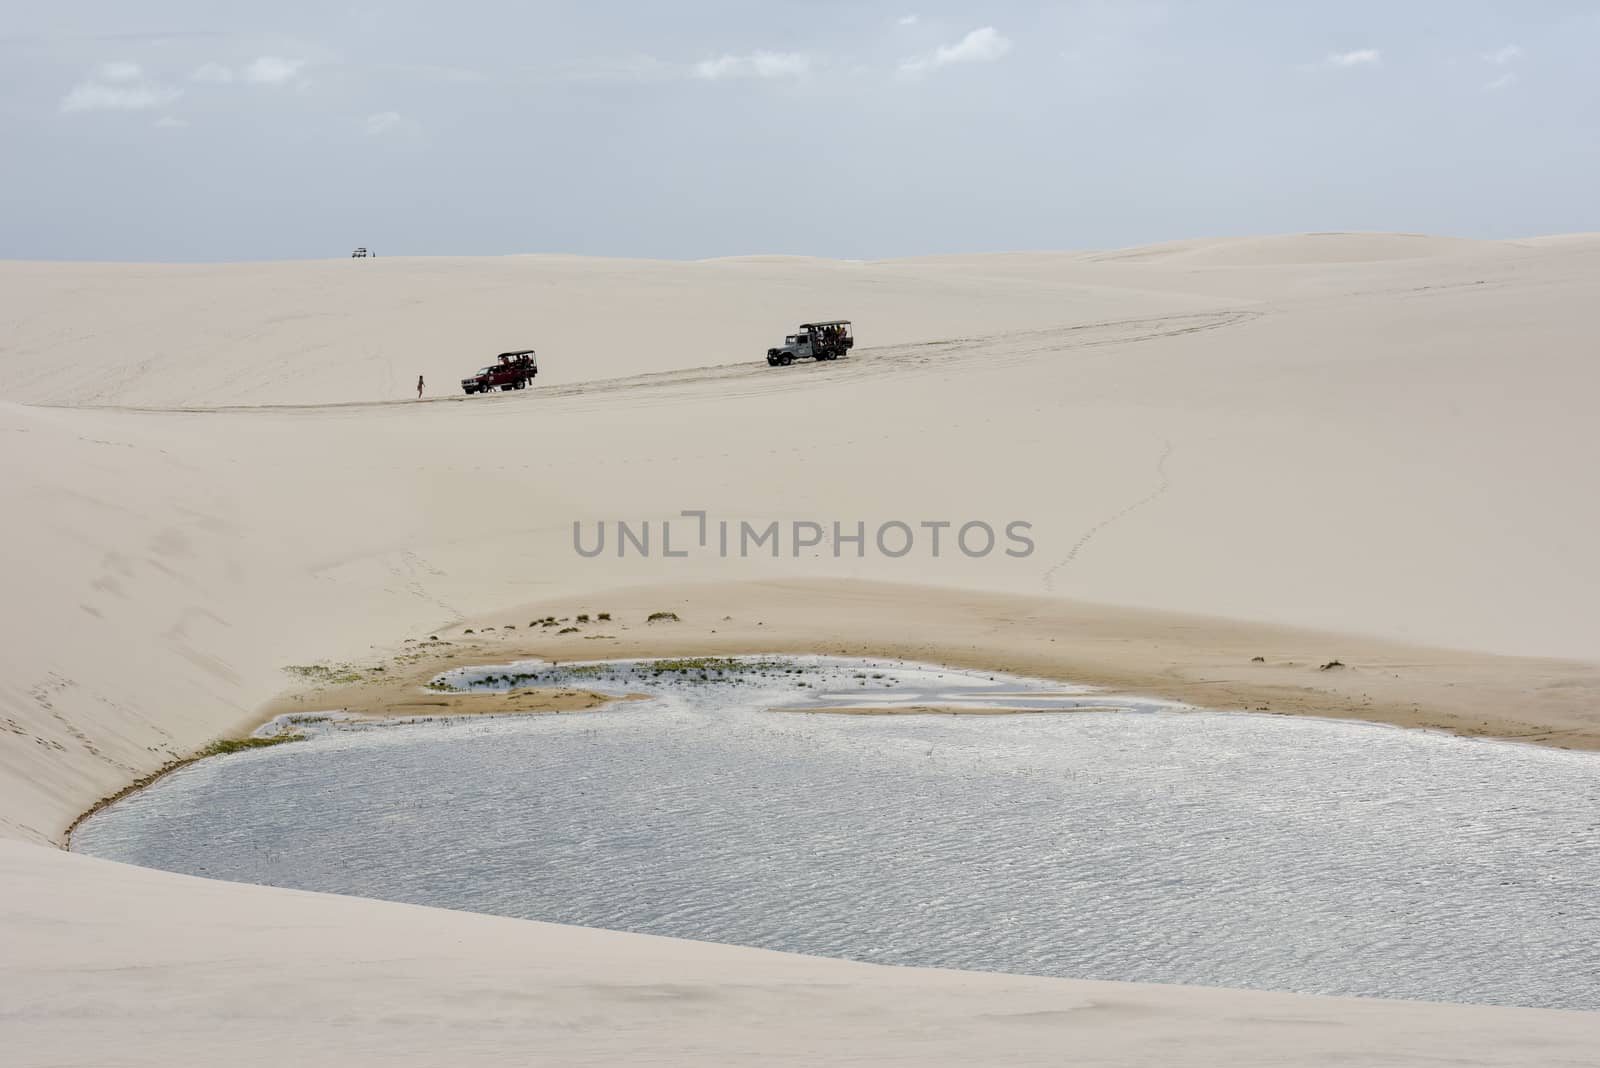 Atins, Brazil - 12 January 2019: tourist trucks on the dunes at Lencois Maranhenese National Park in Brazil